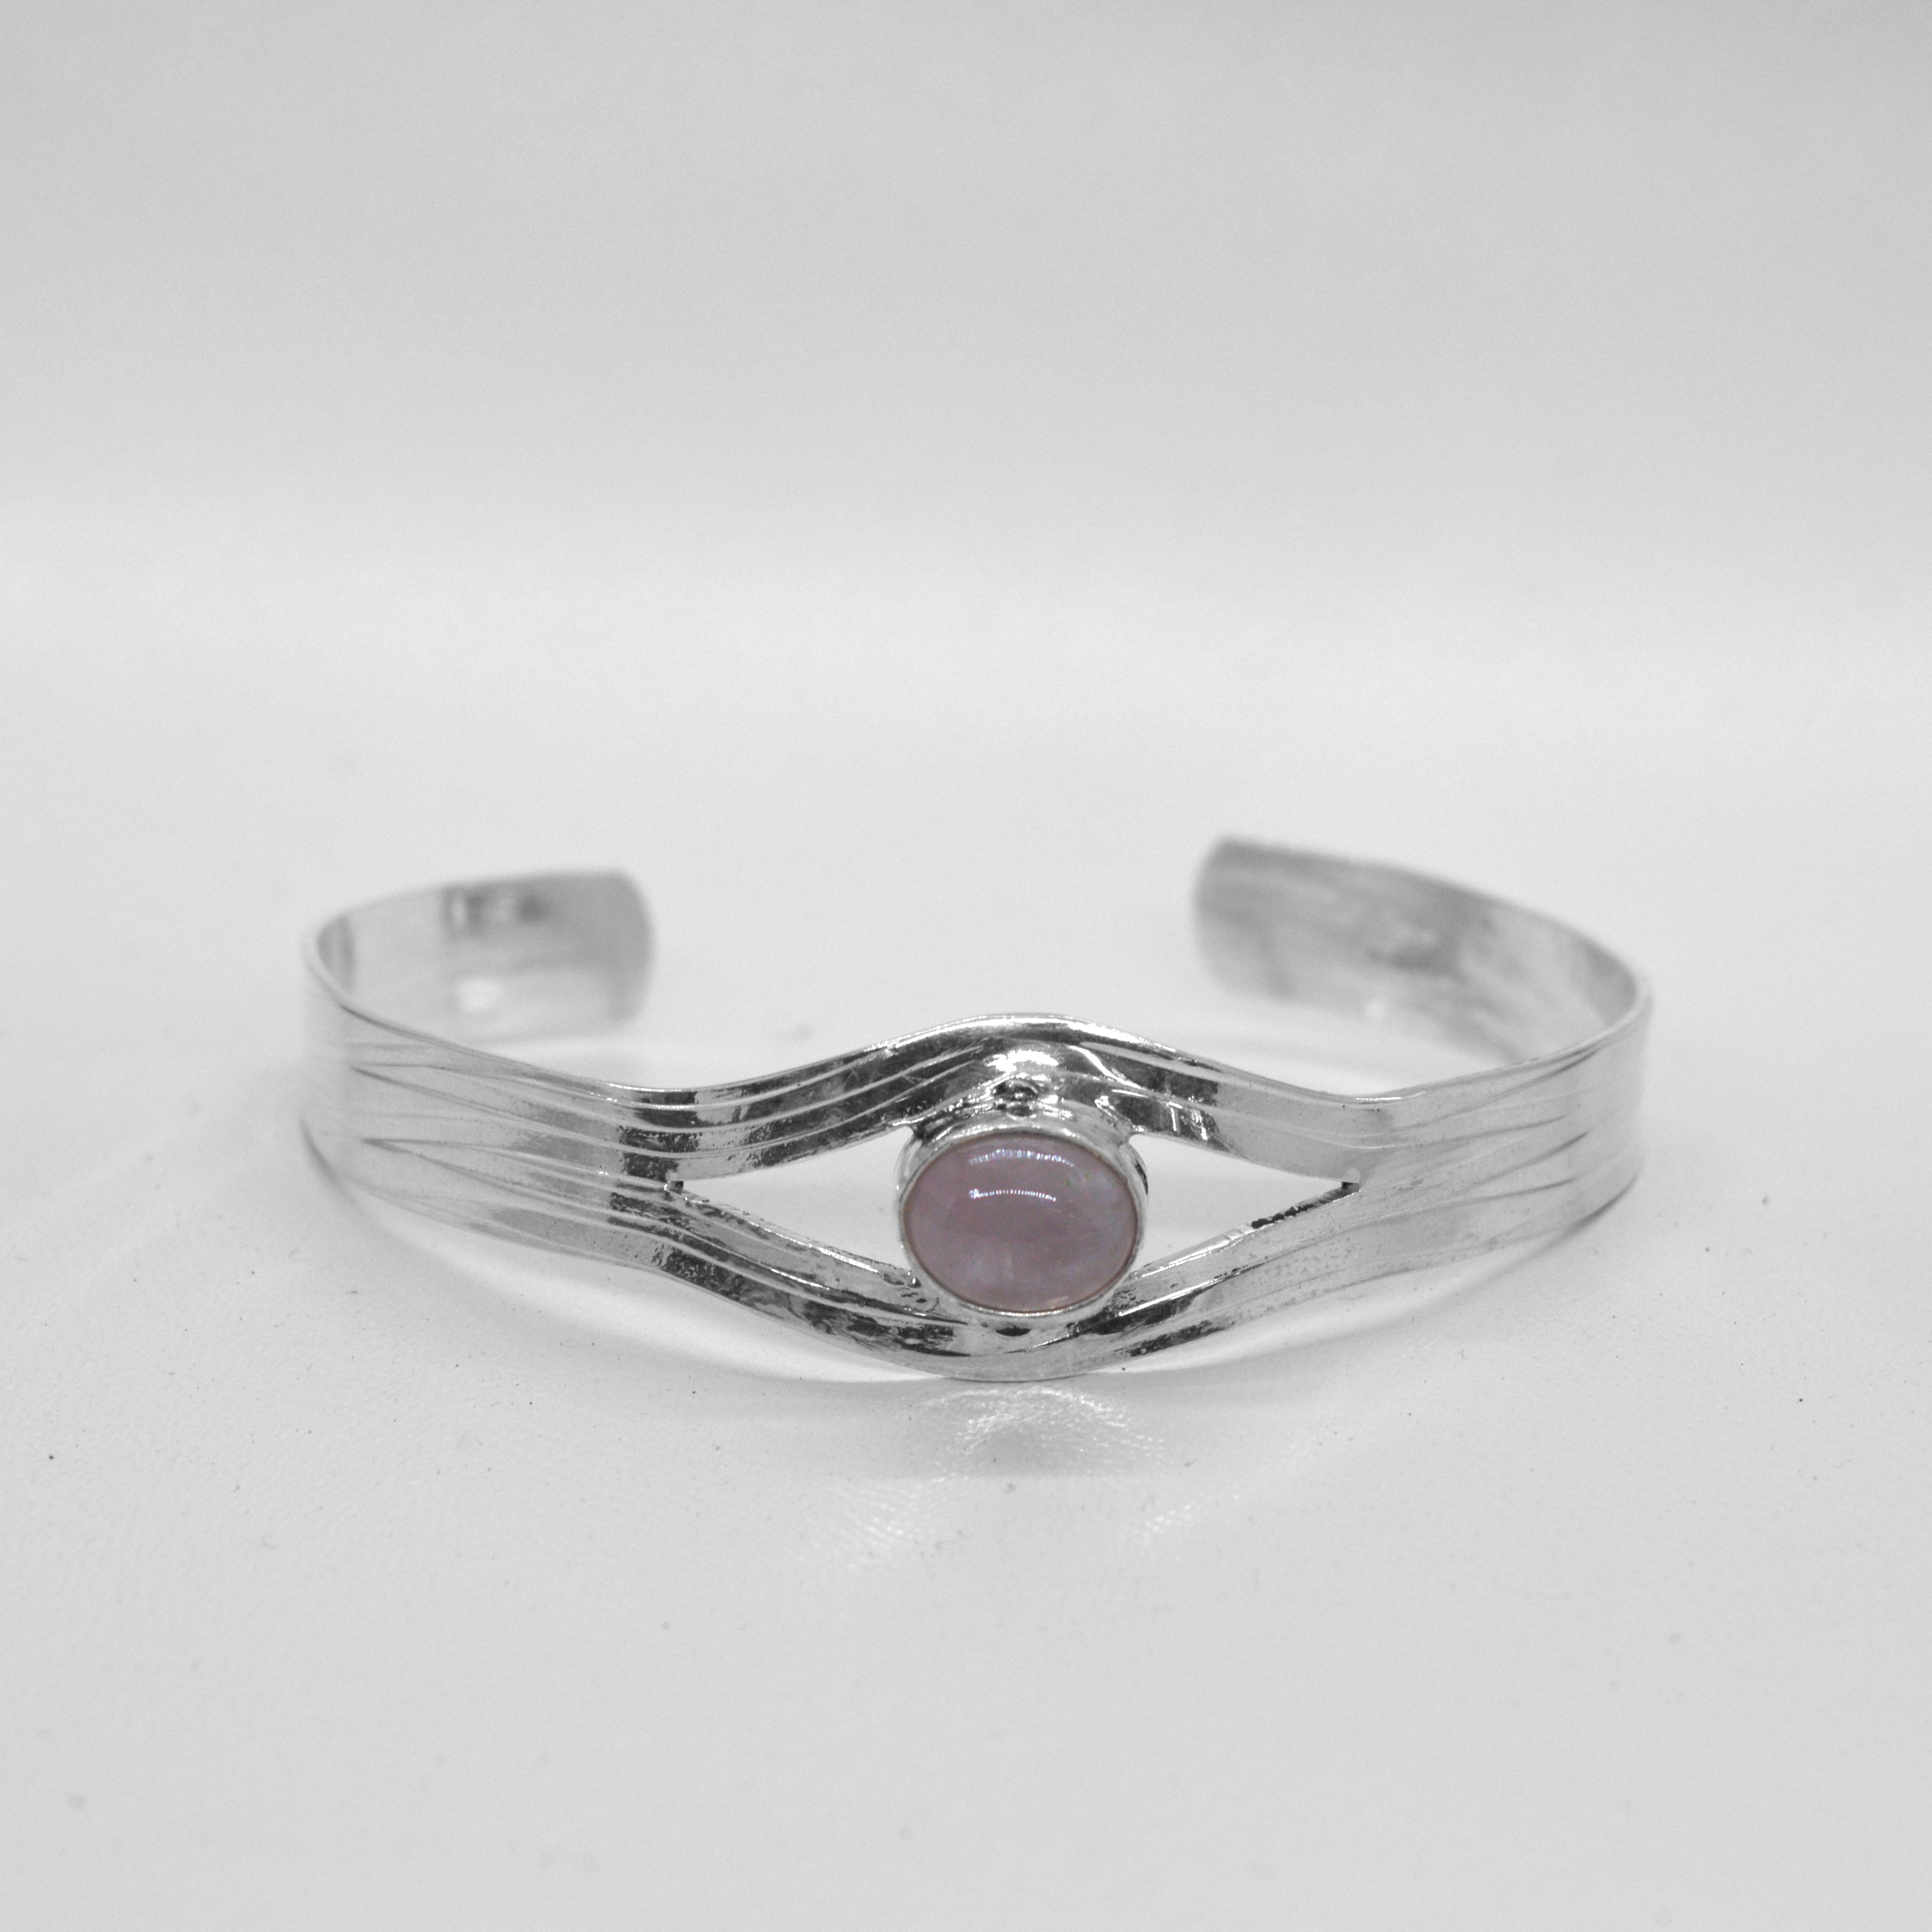 Cuff bracelet with rose quartz